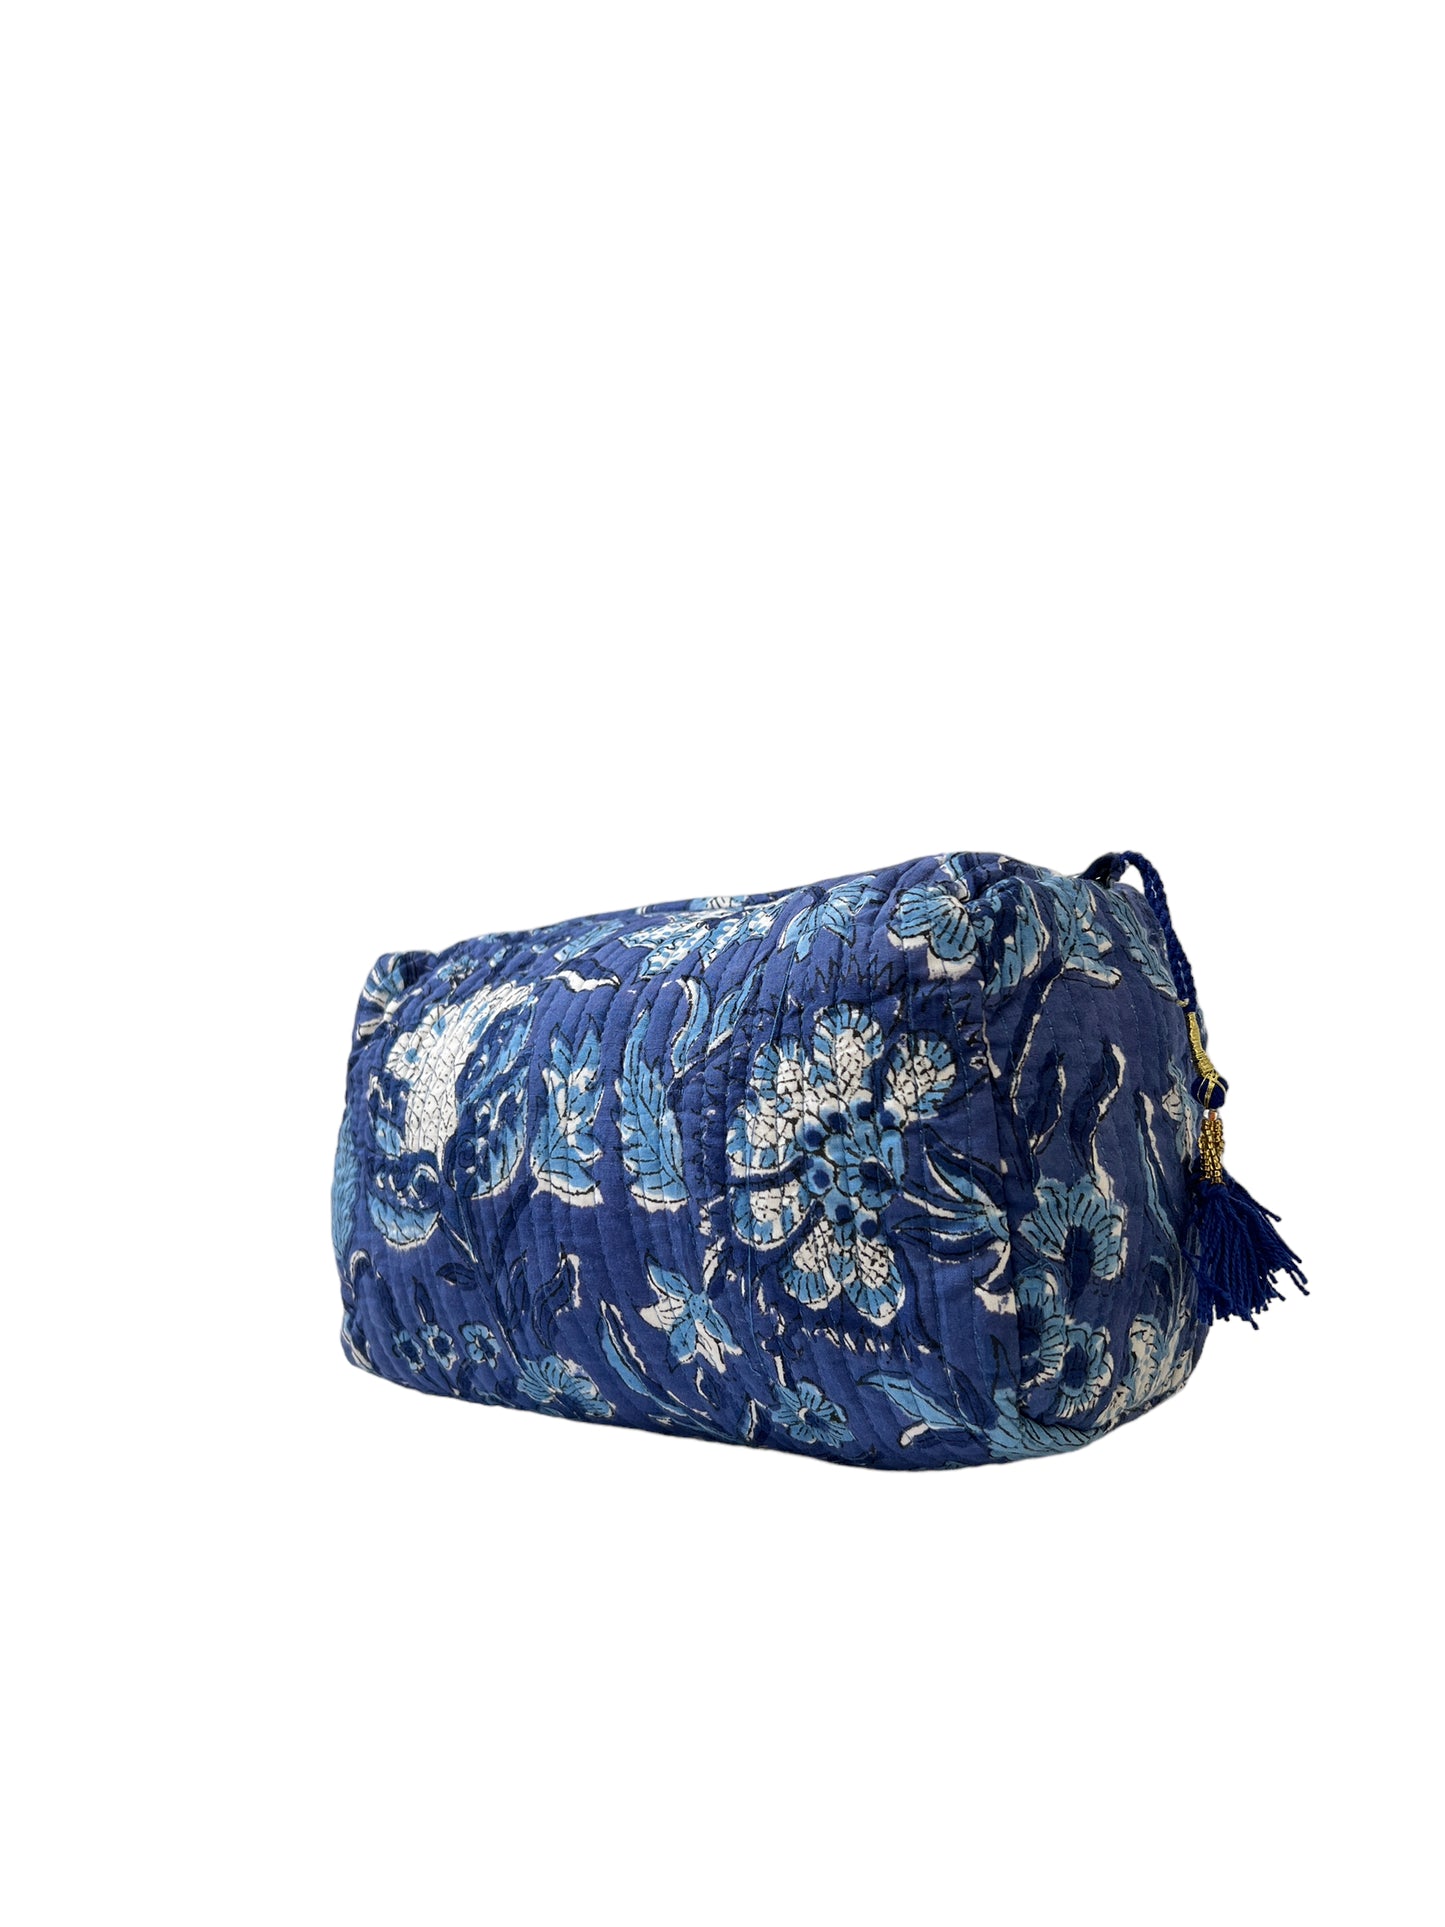 Make Up Bag Denim Blue Floral  (M013)